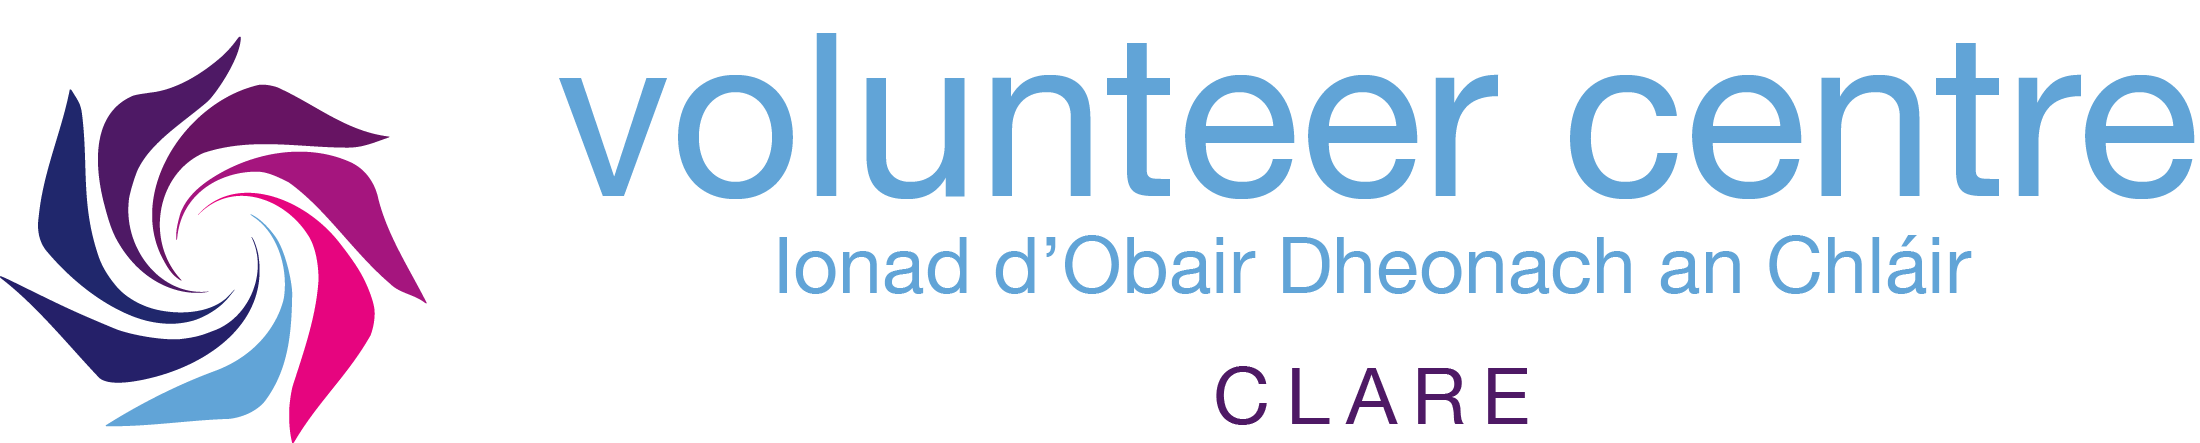 Clare Volunteer Centre